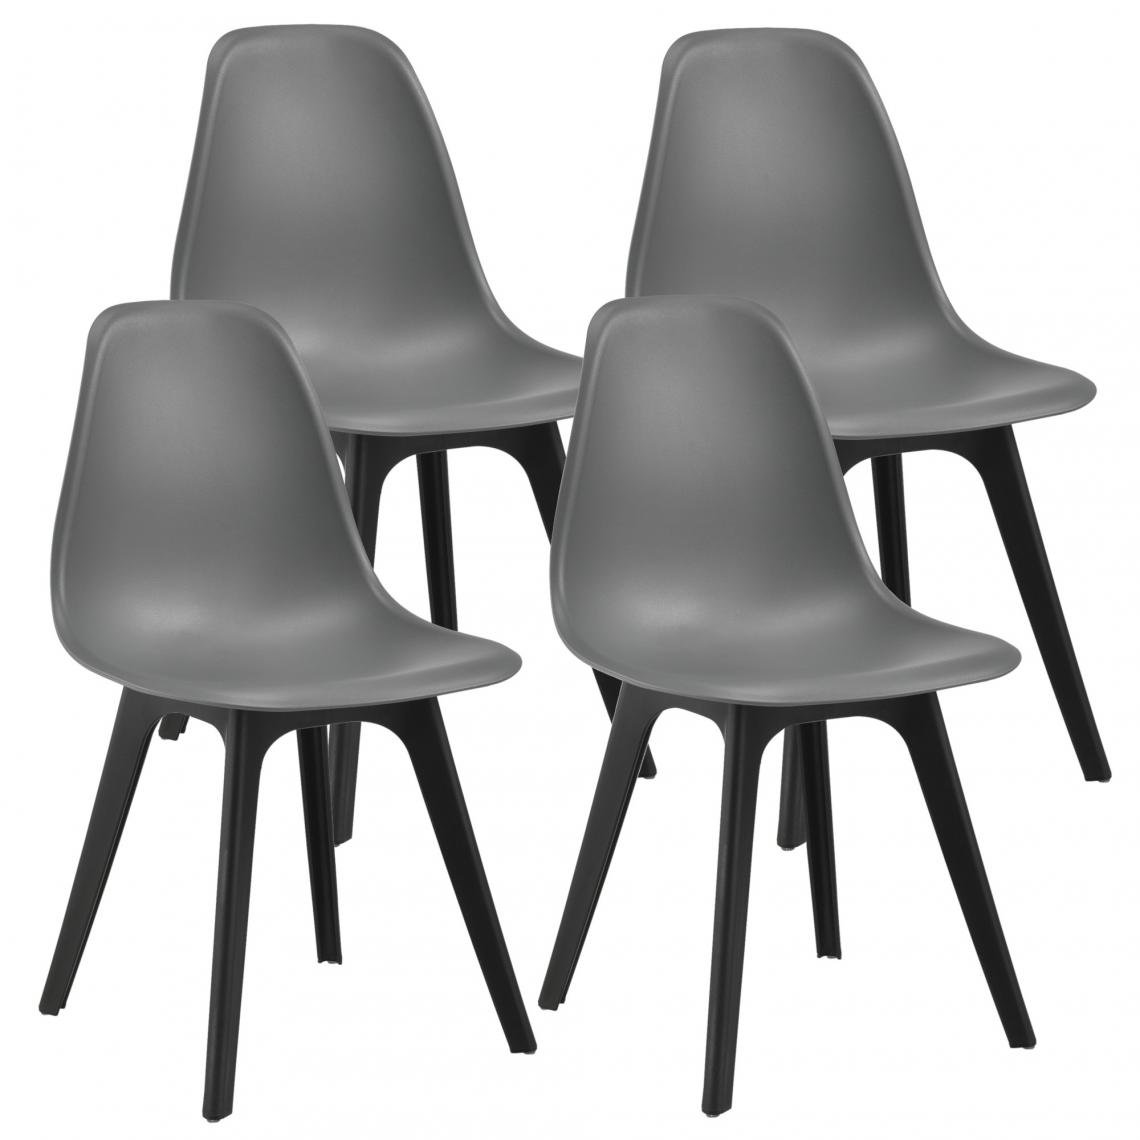 Decoshop26 - Set de 4 Chaises Design Chaise de Cuisine Salle à Manger Plastique Gris et Noir 03_0003707 - Chaises